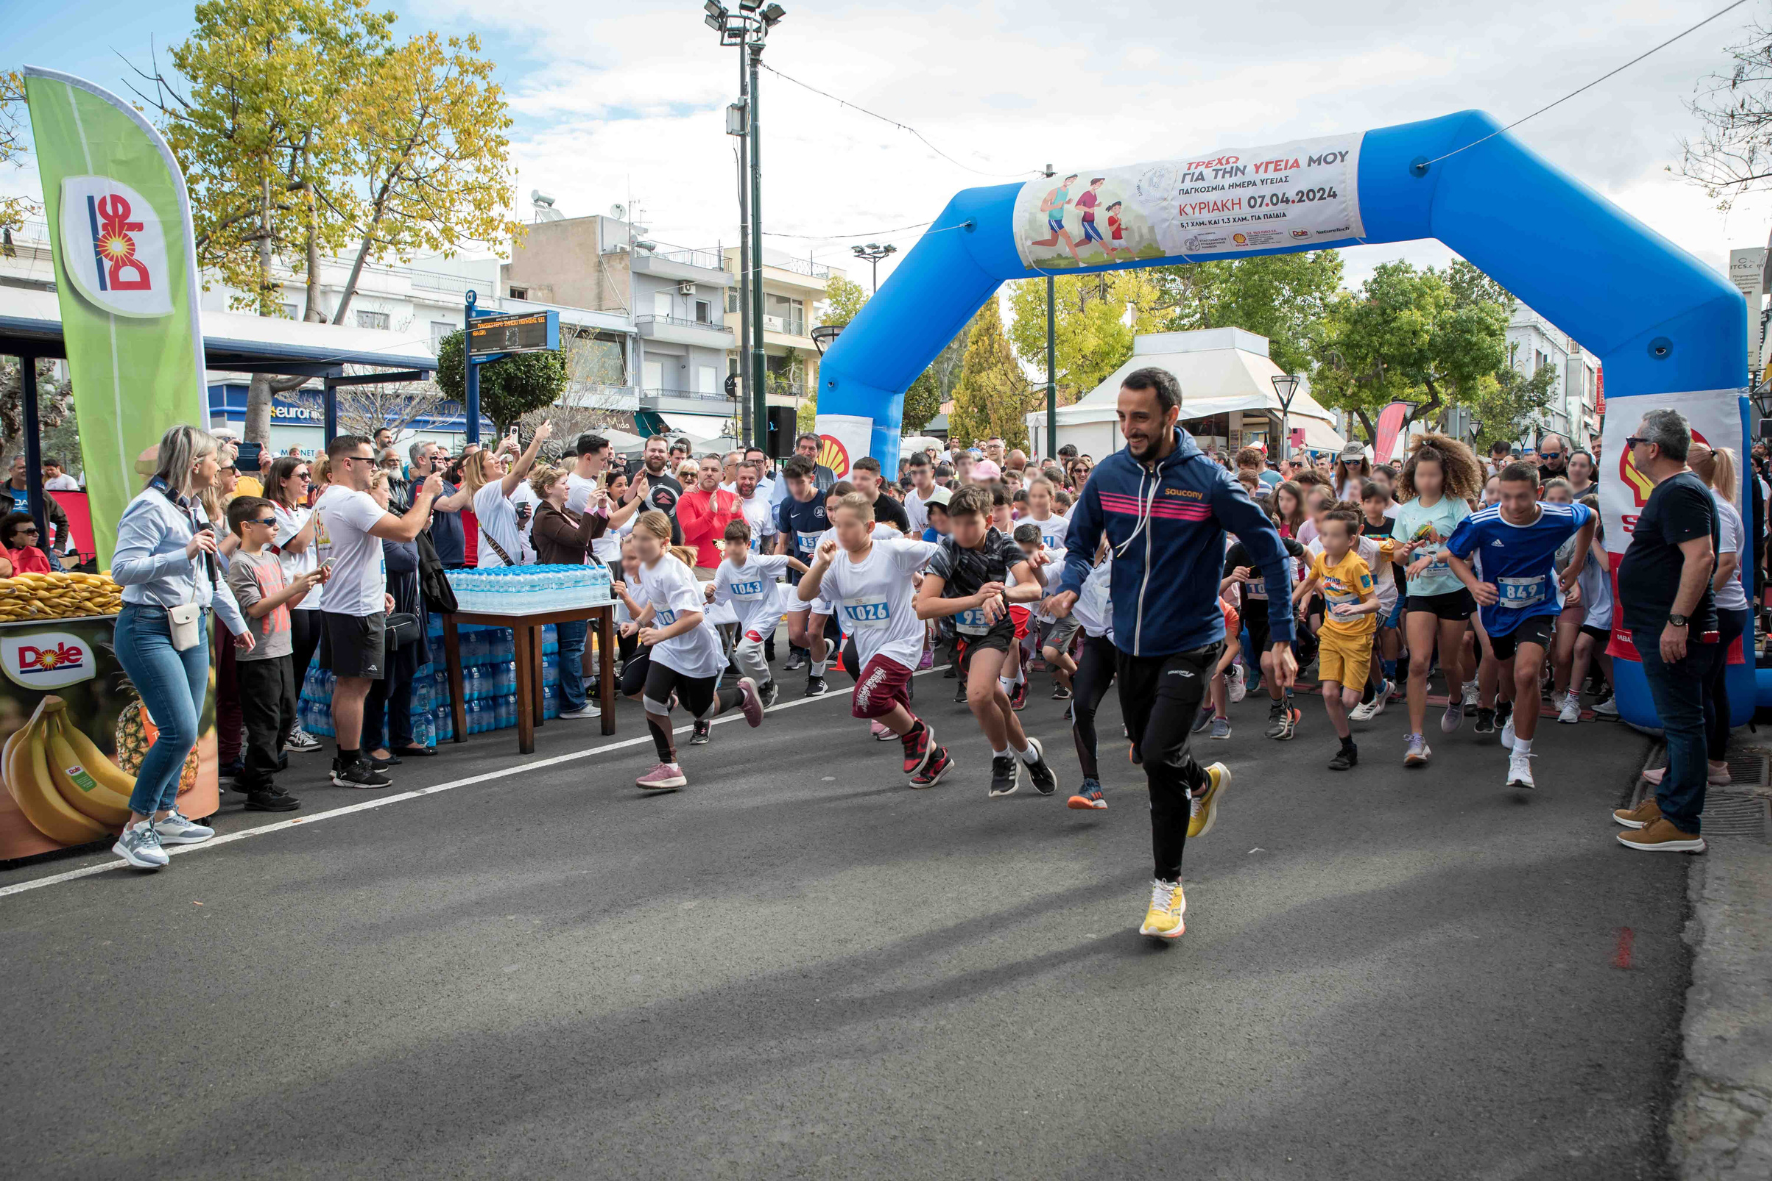 Mε μεγάλη συμμετοχή ο 1ος αγώνας δρόμου «Τρέχω για την υγεία μου». Δήμαρχος Ιλίου: «Δέσμευση μας η προαγωγή του αθλητισμού και της υγείας» 